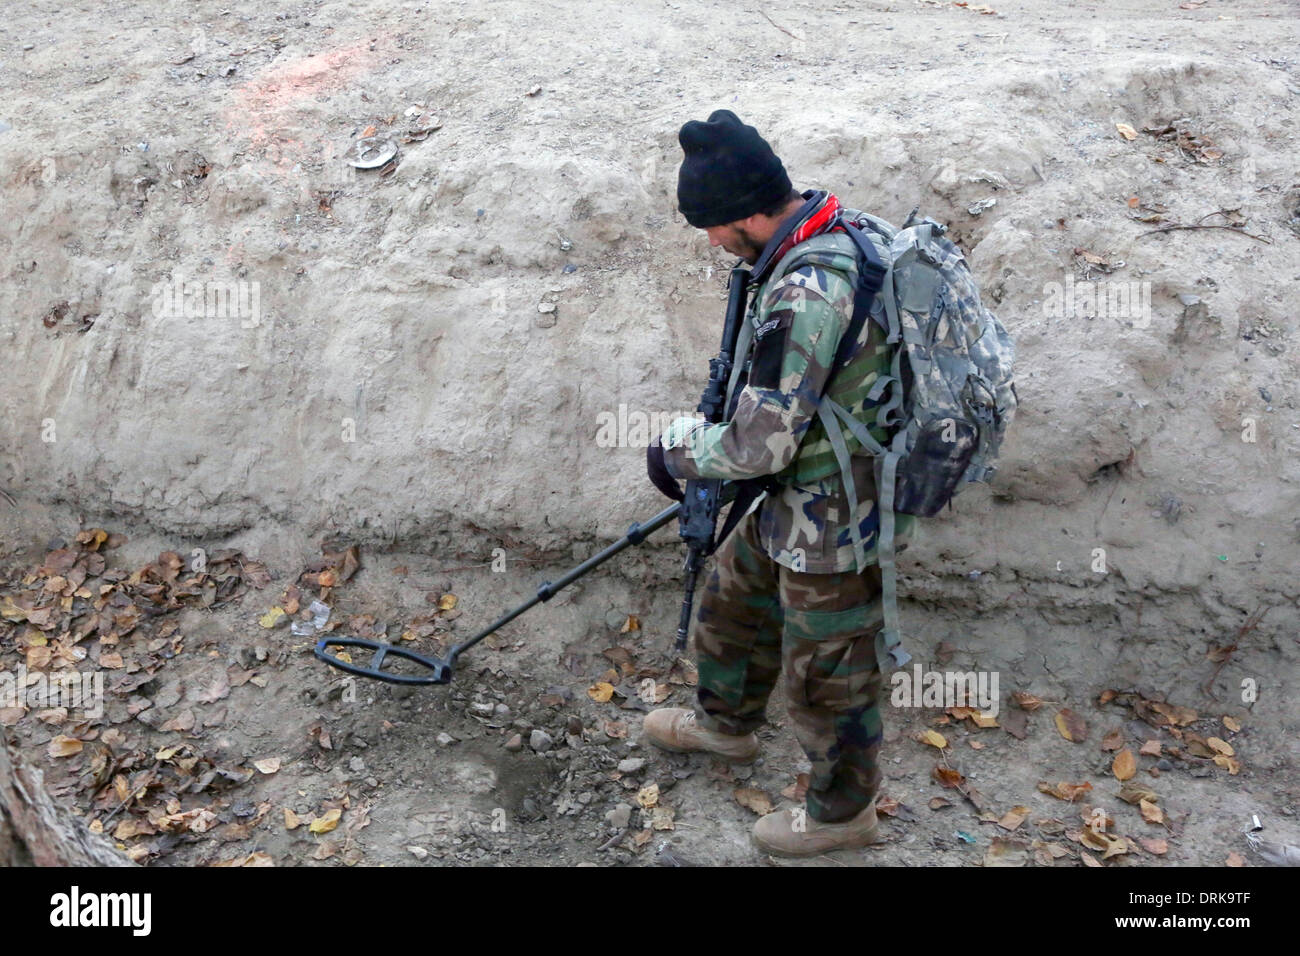 Un commando de l'Armée nationale afghane avec les opérations spéciales Le Kandak d'analyses pour des dispositifs explosifs de circonstance lors d'une opération de compensation, le 4 décembre 2013 dans Perozi village, district de Panjwai, province de Kandahar, Afghanistan. Banque D'Images